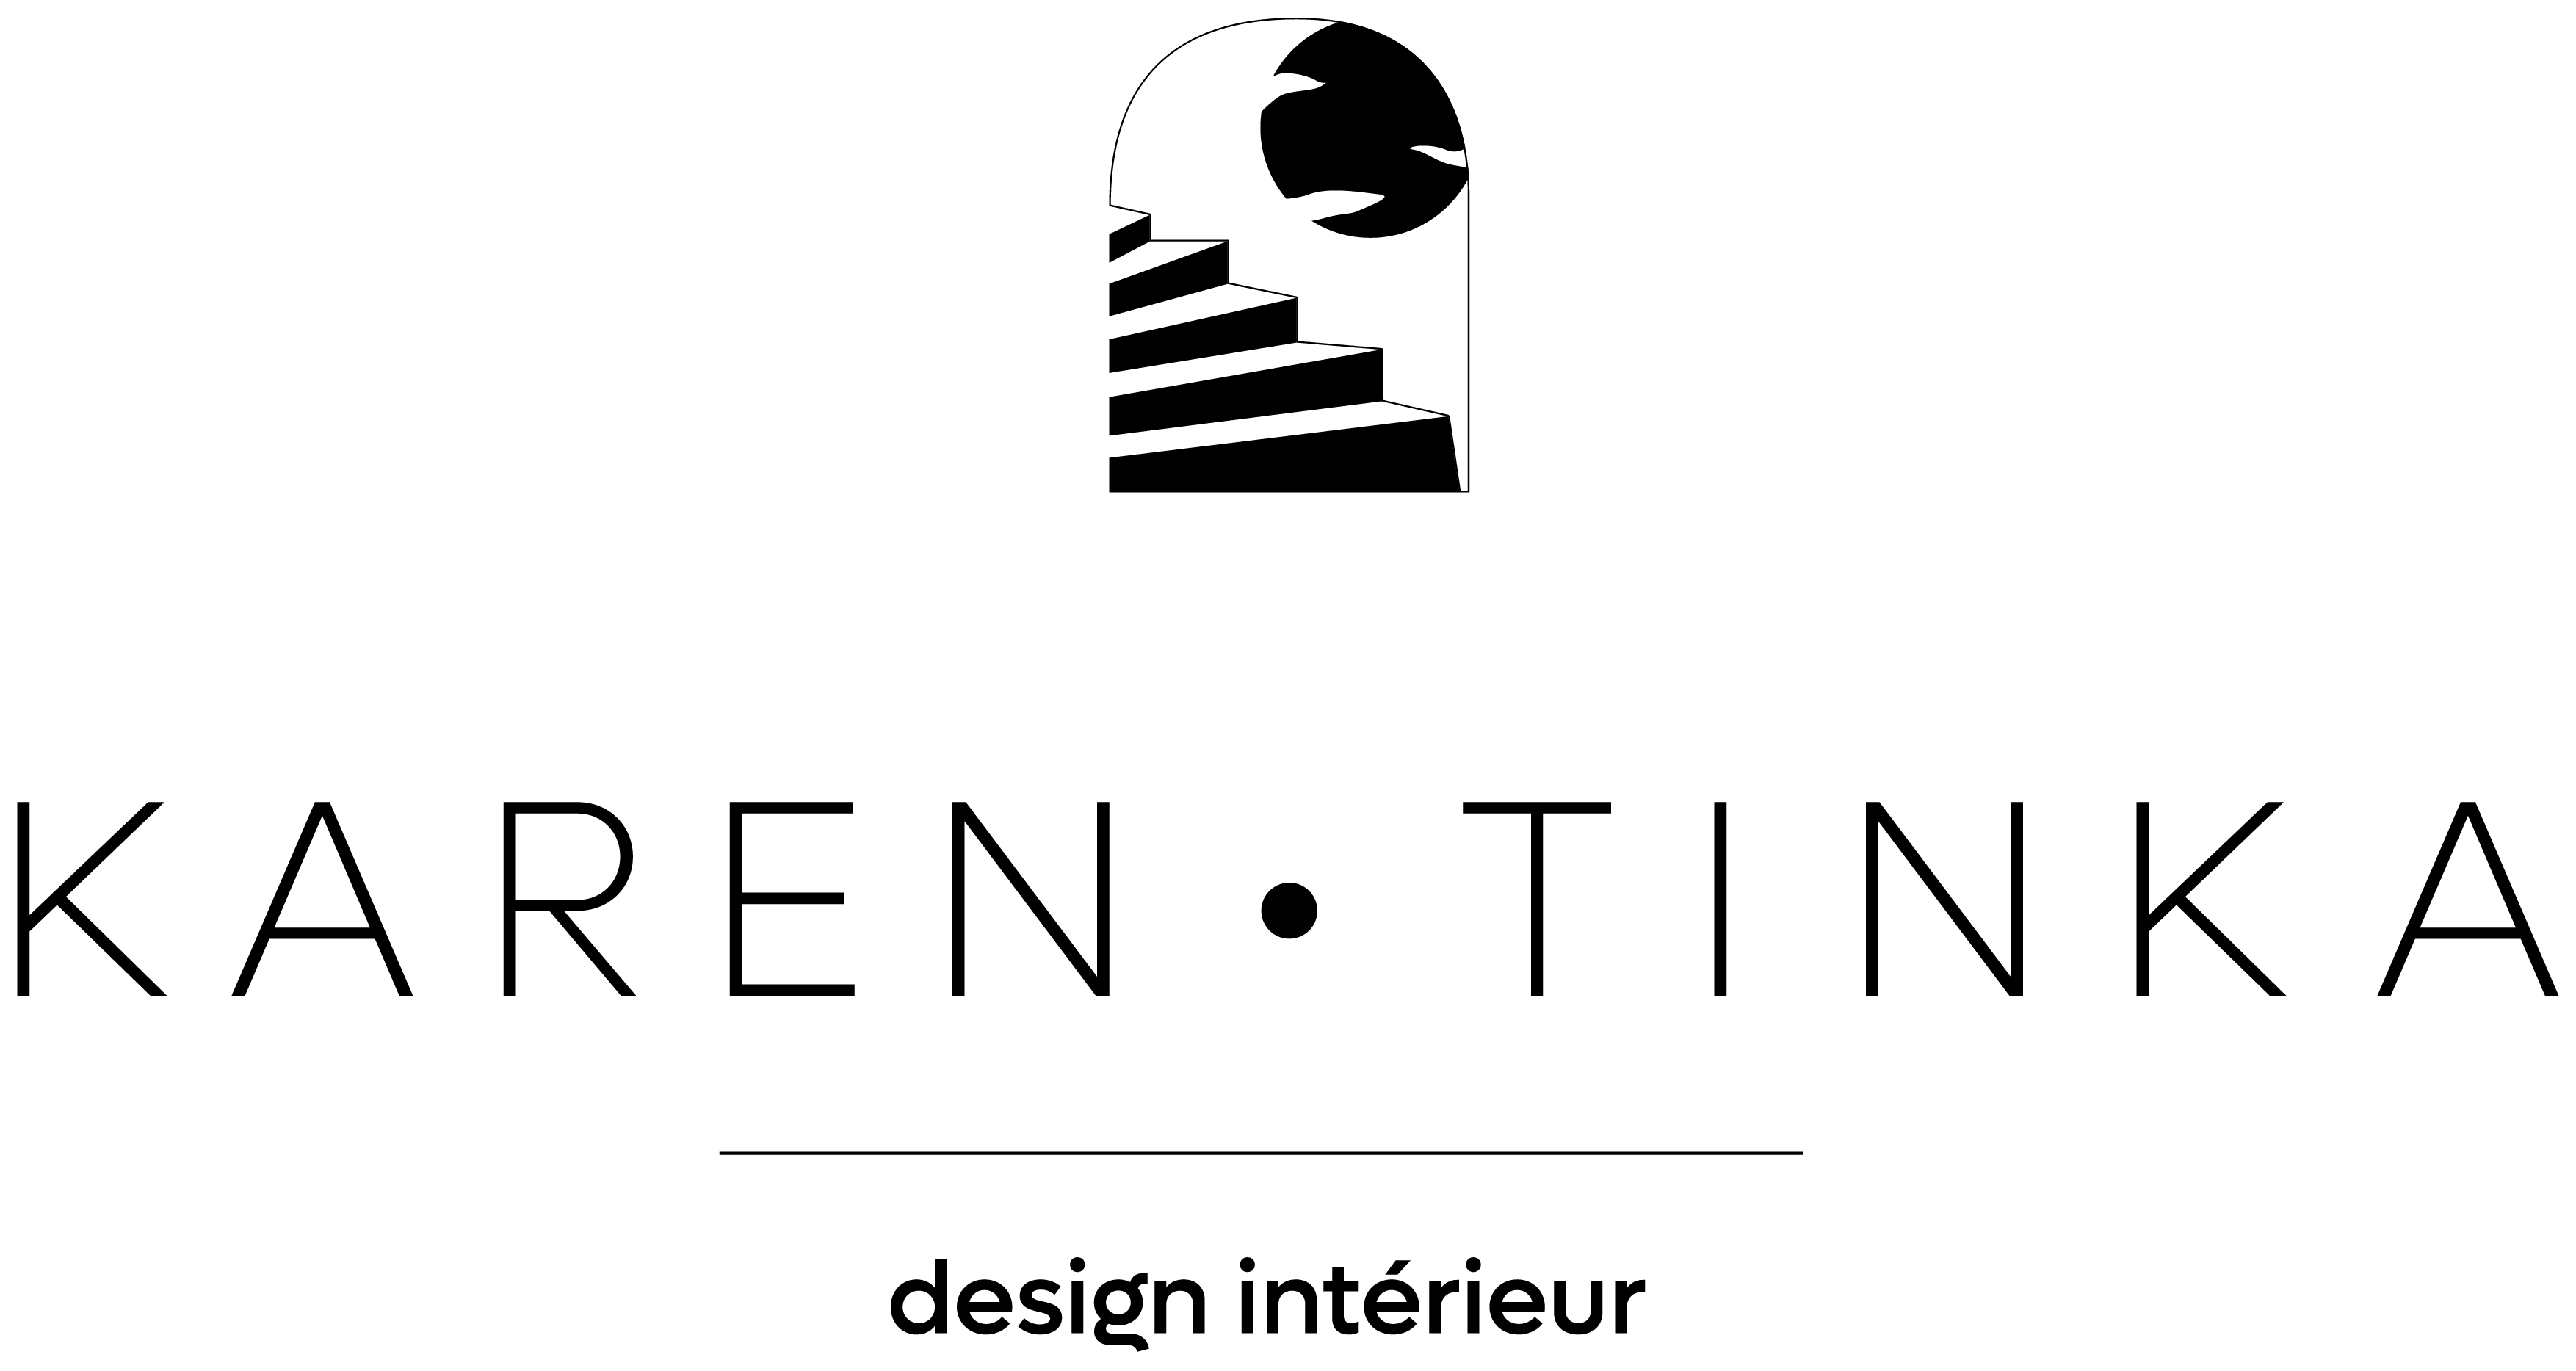 KAREN TINKA - Design Intérieur logo